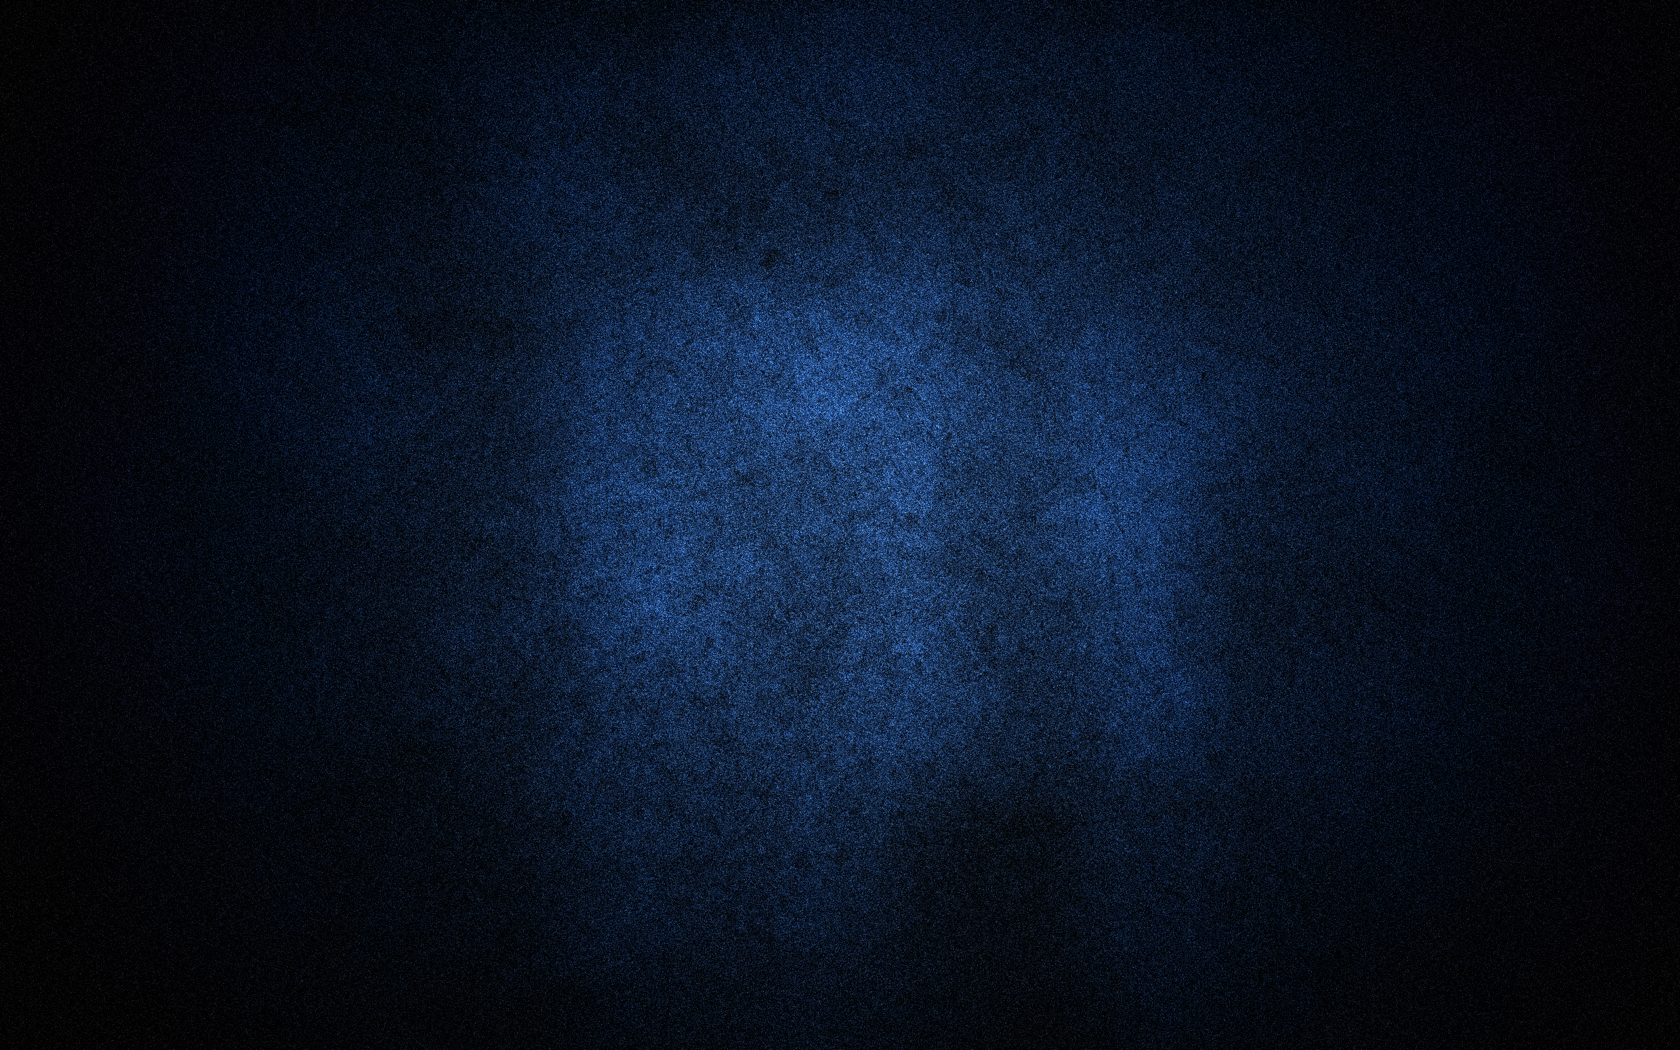 General 1680x1050 pattern texture blue background dark blue